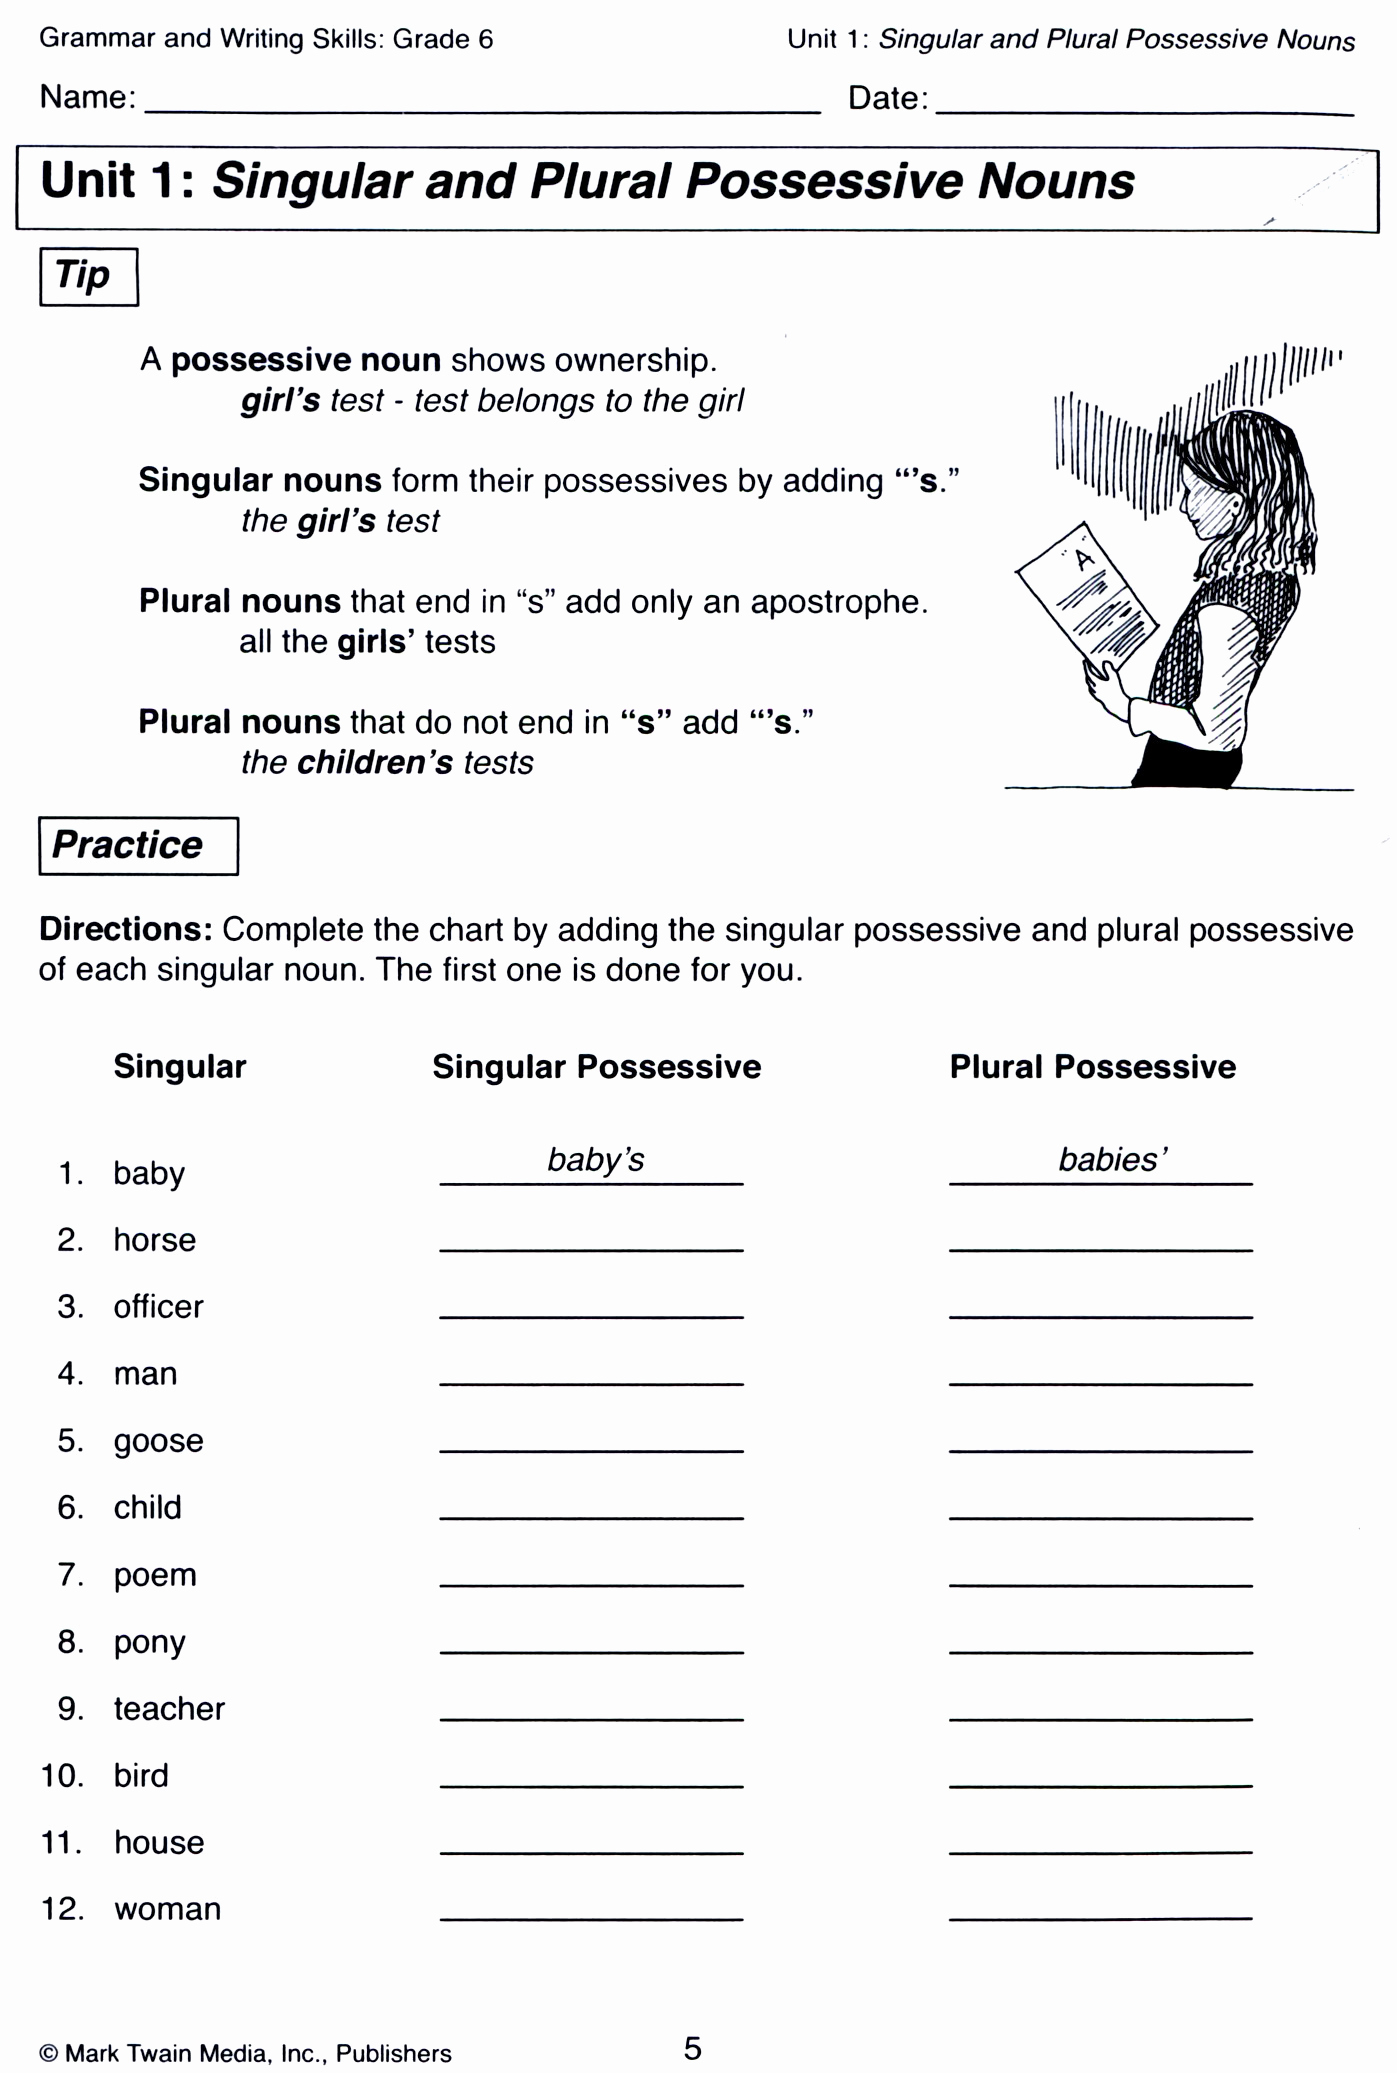 Possessive Pronouns Worksheet 5th Grade Inspirational Possessive Pronouns Worksheet 5th Grade